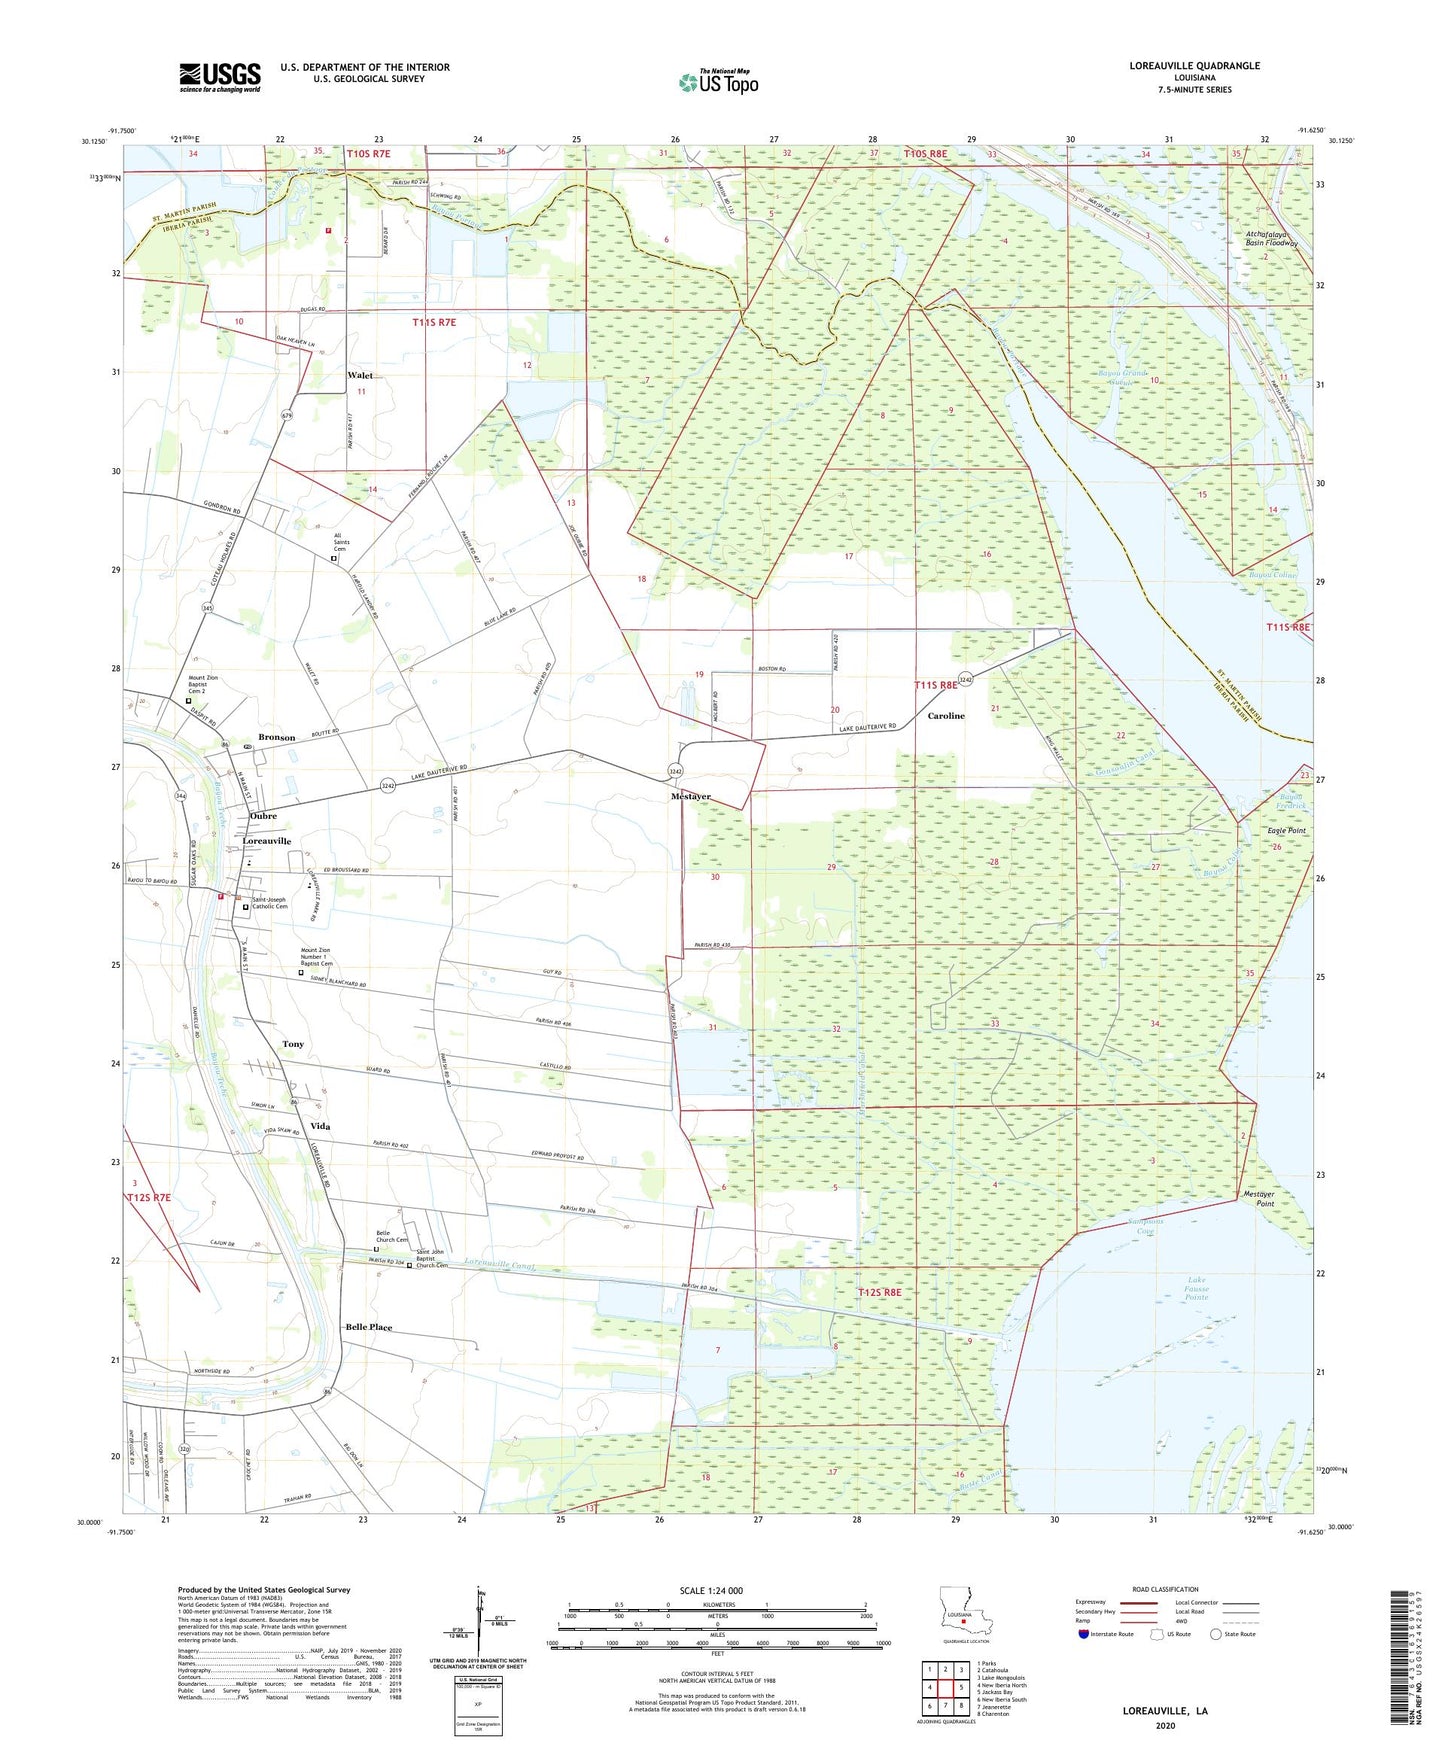 Loreauville Louisiana US Topo Map Image